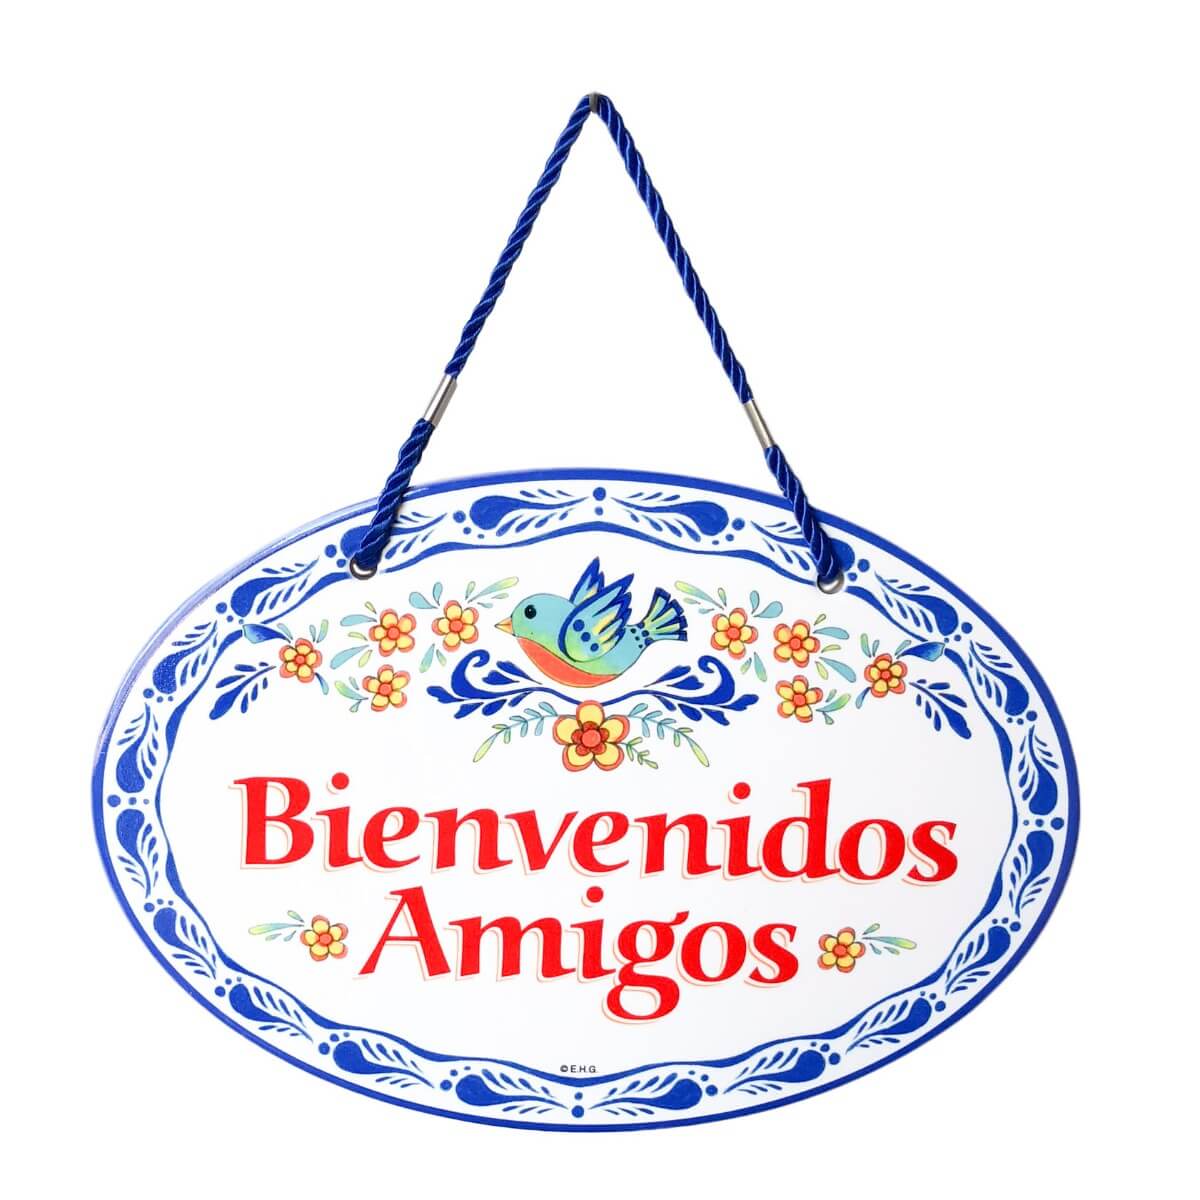 Ceramic Latino Gift Idea Welcome Sign Bienvenidos Amigos Yellow Geckos